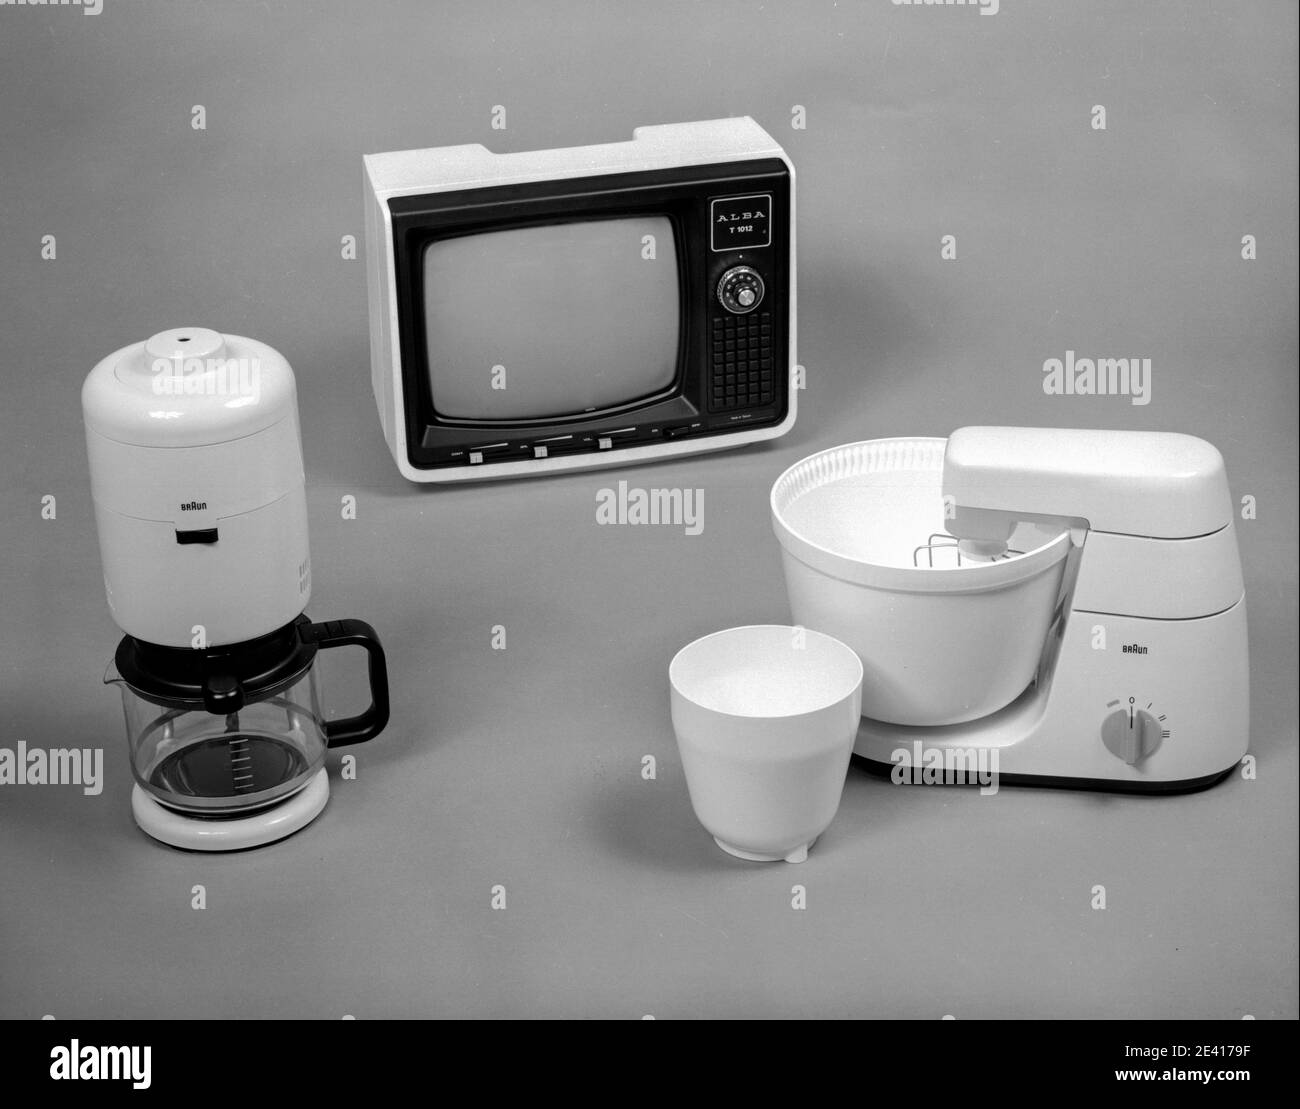 Ein Mixer für Lebensmittel, Kaffeemaschine und tragbarer Fernseher aus dem Jahr 1960s, alte Haushaltsgeräte. Stockfoto